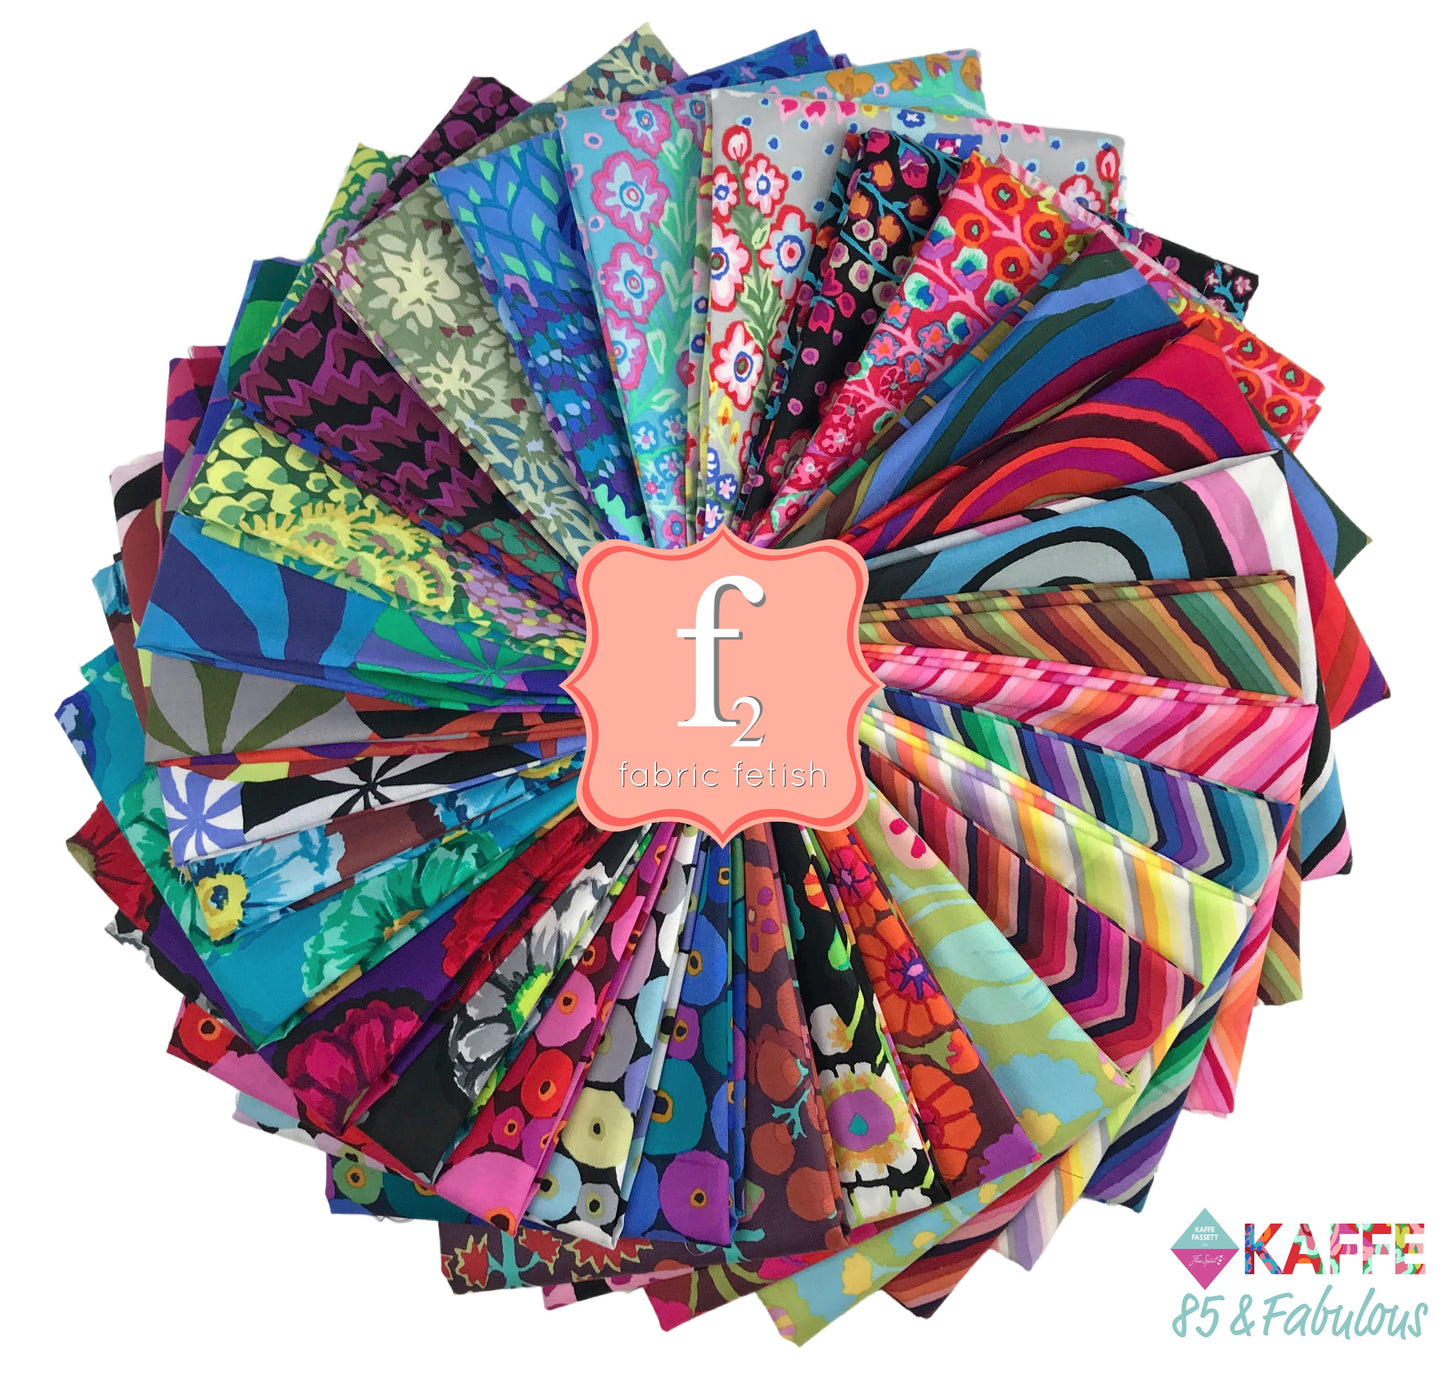 Kaffe Fassett 85 and Fabulous Freespirit Fabrics Fabric Fetish